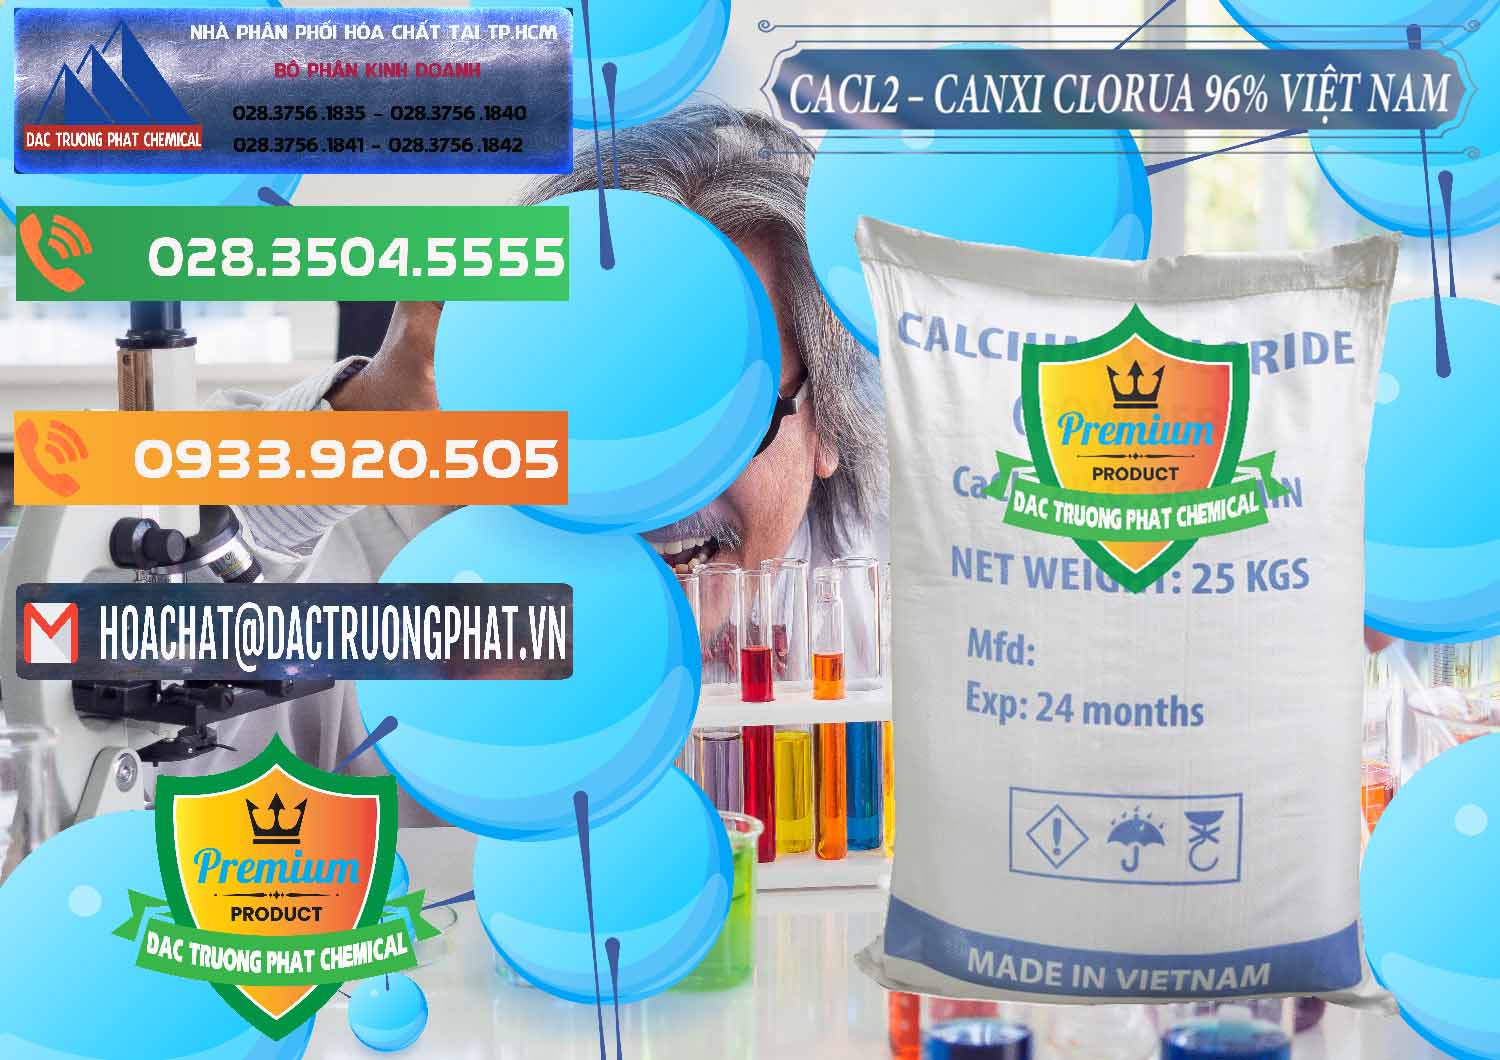 Công ty cung ứng _ bán CaCl2 – Canxi Clorua 96% Việt Nam - 0236 - Kinh doanh & cung cấp hóa chất tại TP.HCM - hoachatxulynuoc.com.vn